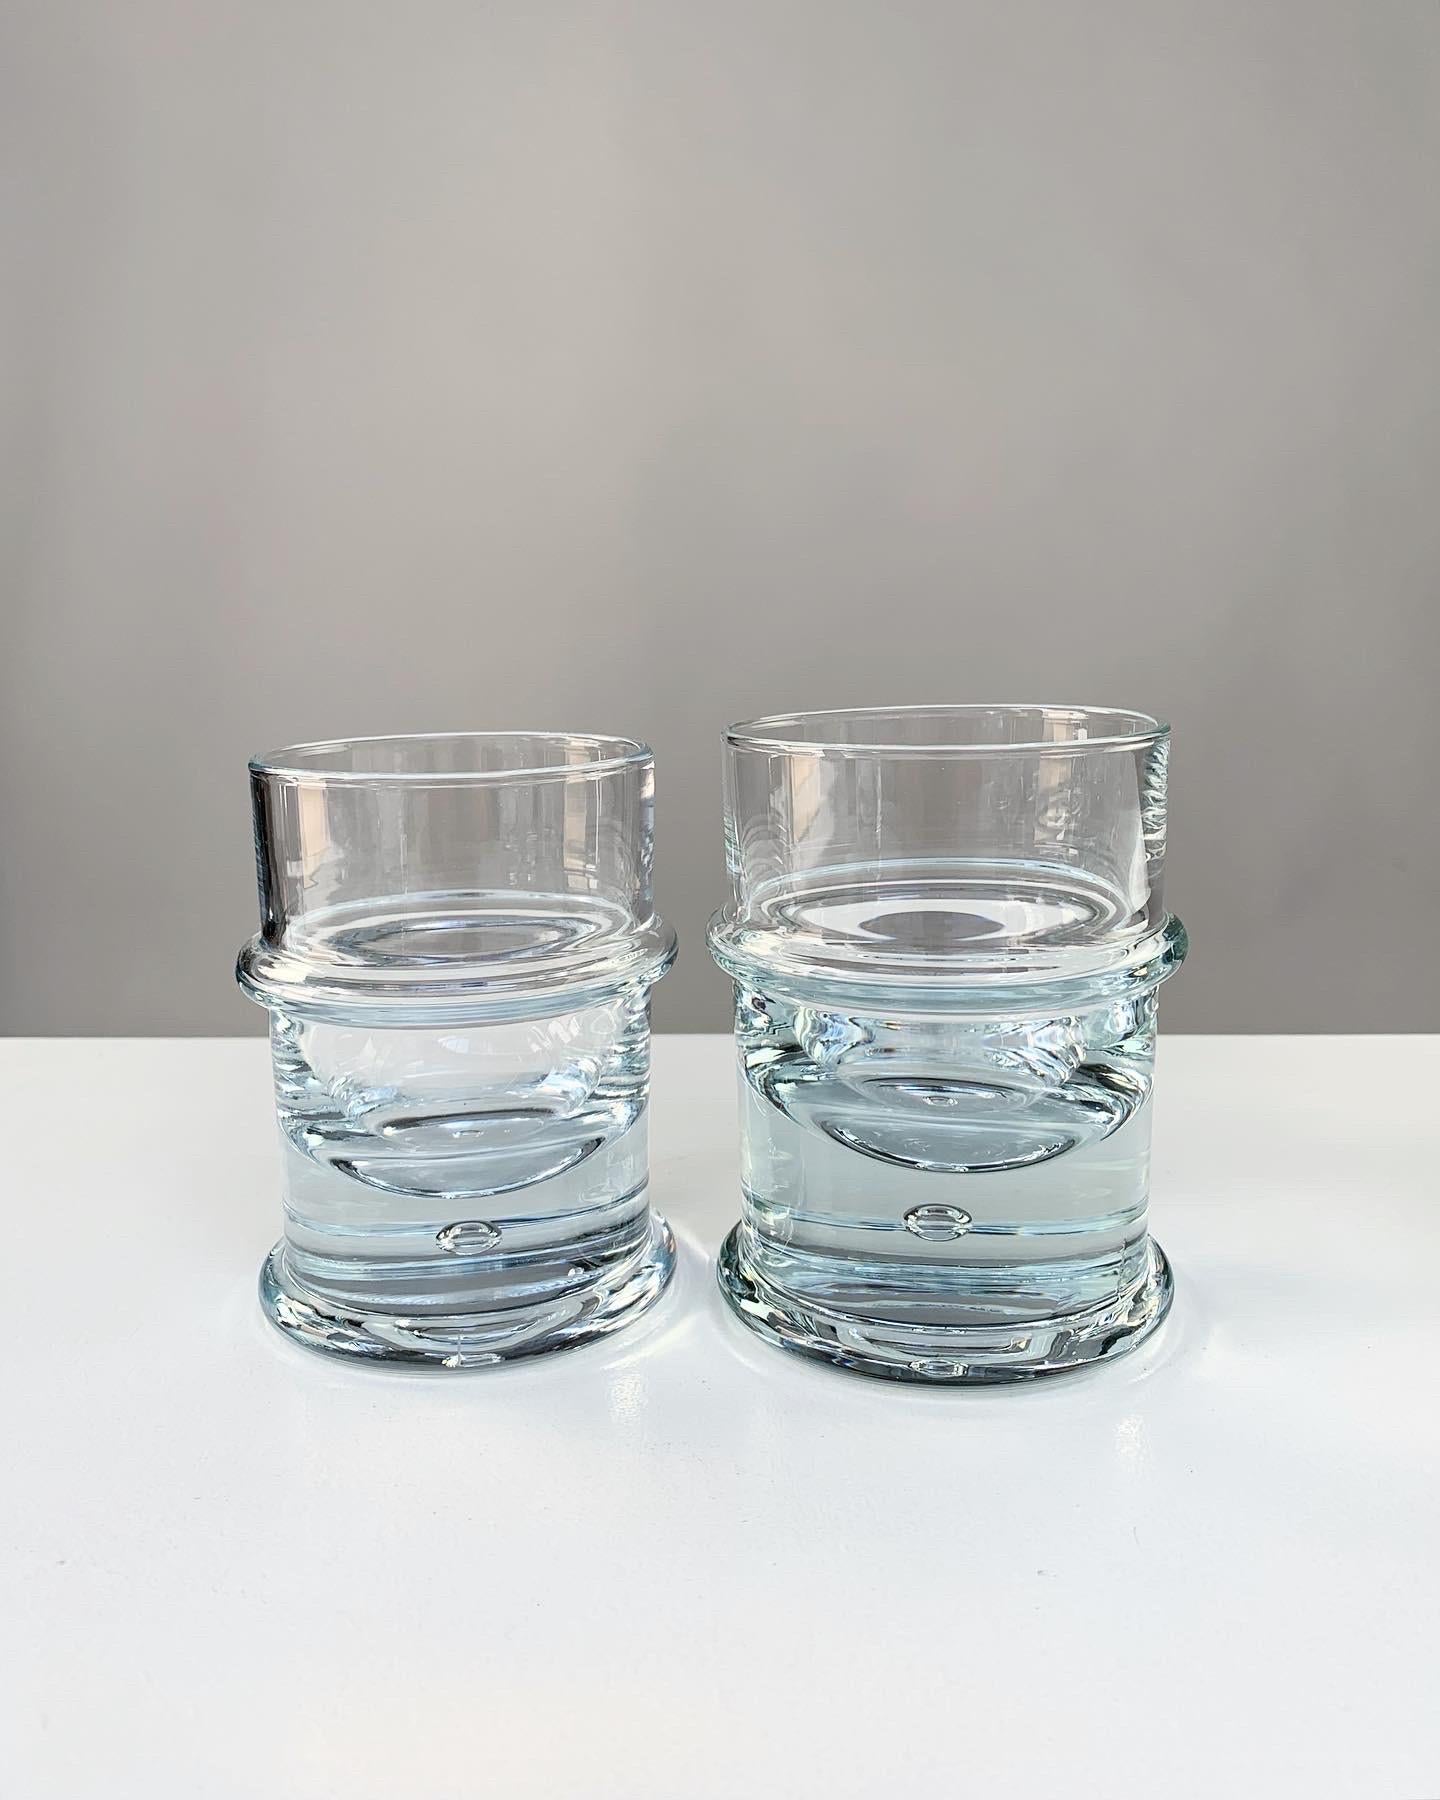 Late 20th Century Holmegaard Crystal Glass Decanter Bottle & Tumbler Glasses Regiment Sidse Werner